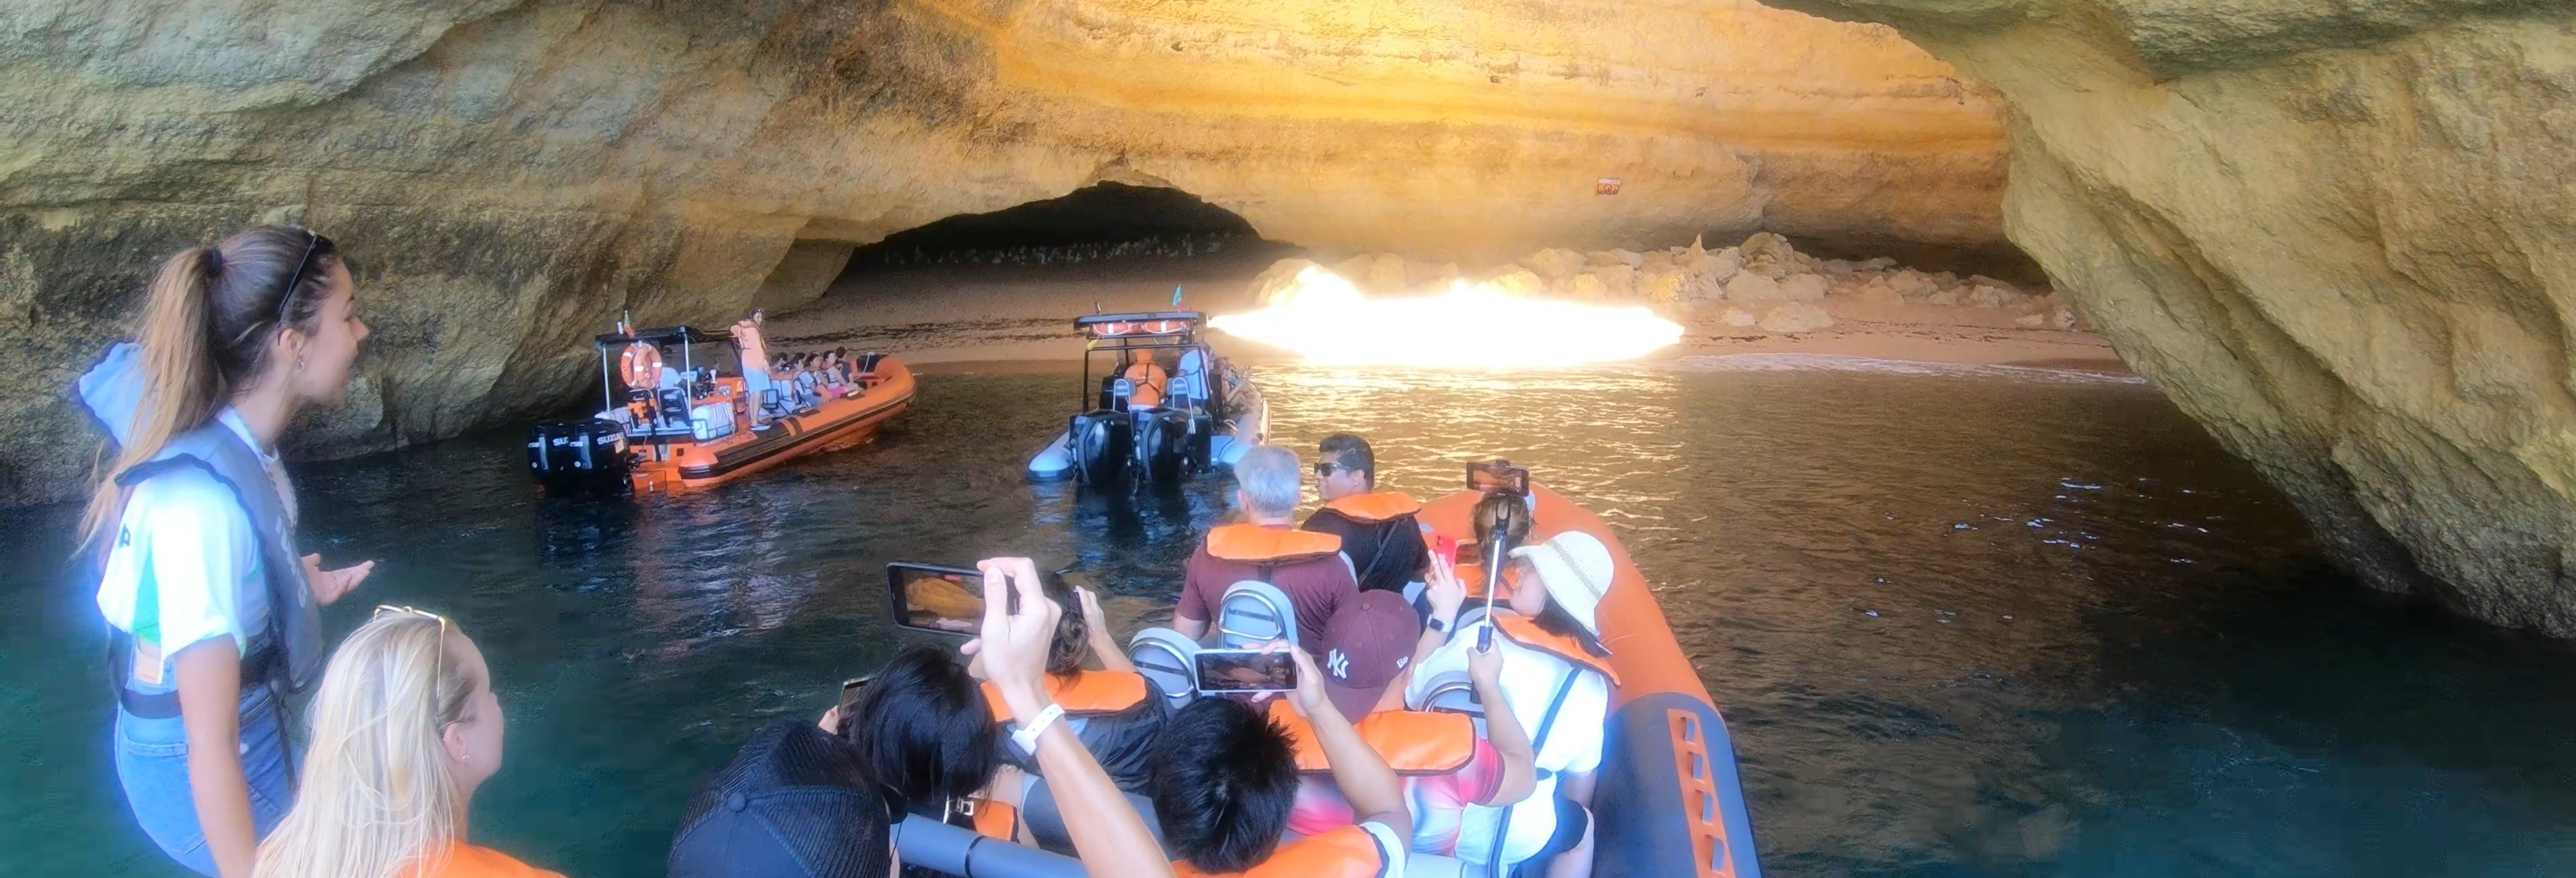 Passeio de barco pelo Algarve e grutas de Benagil